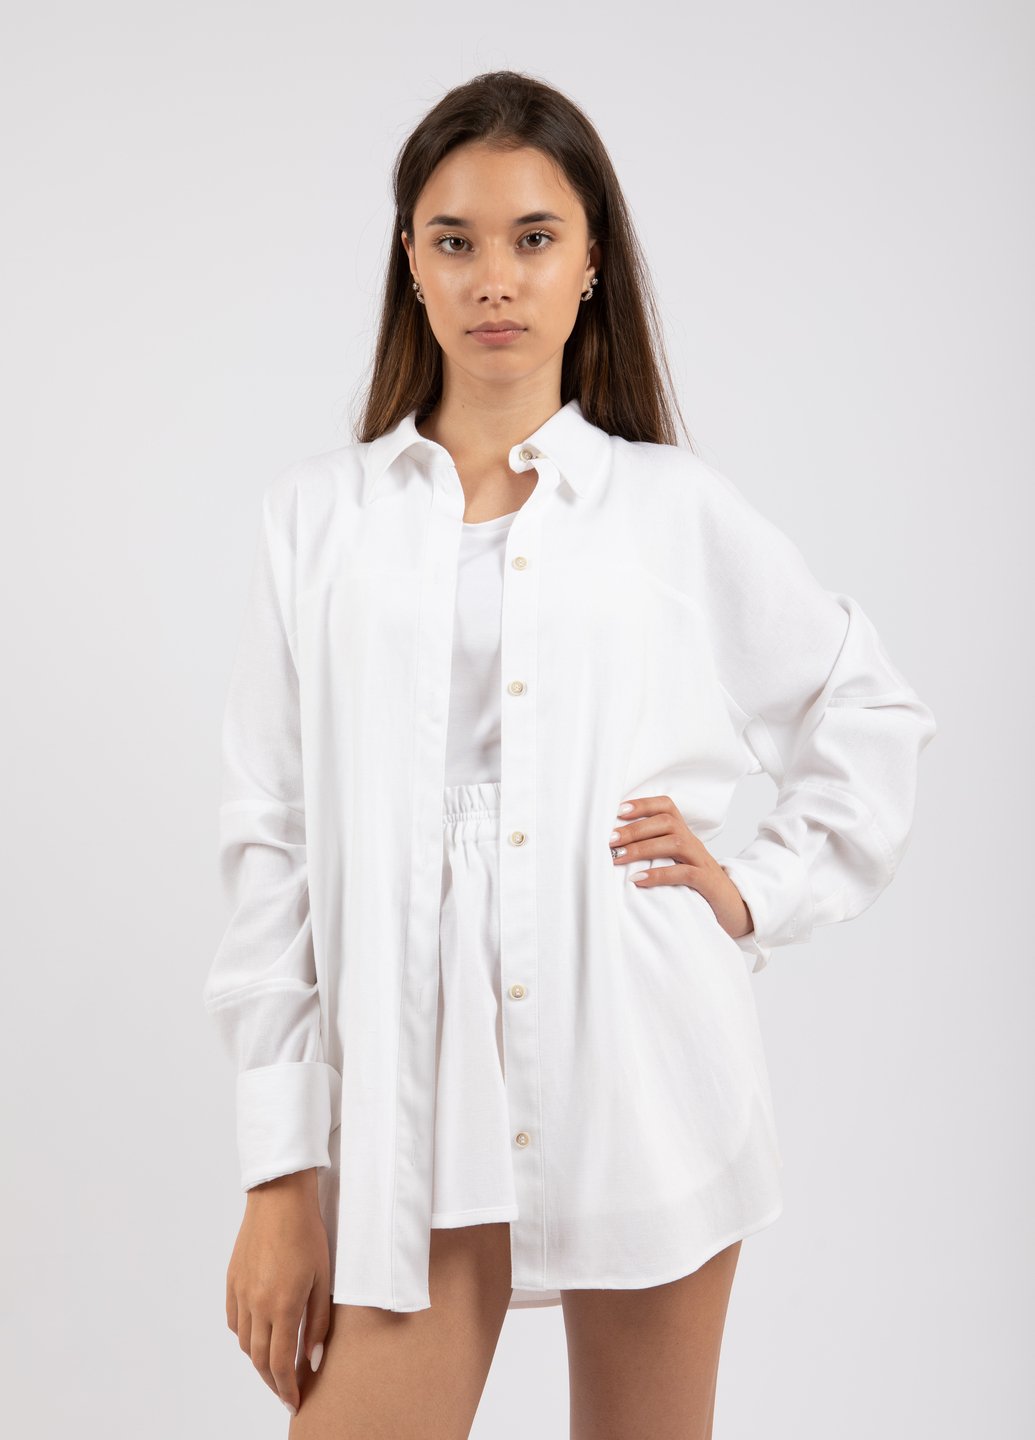 Купить Оверсайз льняная рубашка женская Merlini Барбадос 200000038 - Белый, 42-44 в интернет-магазине